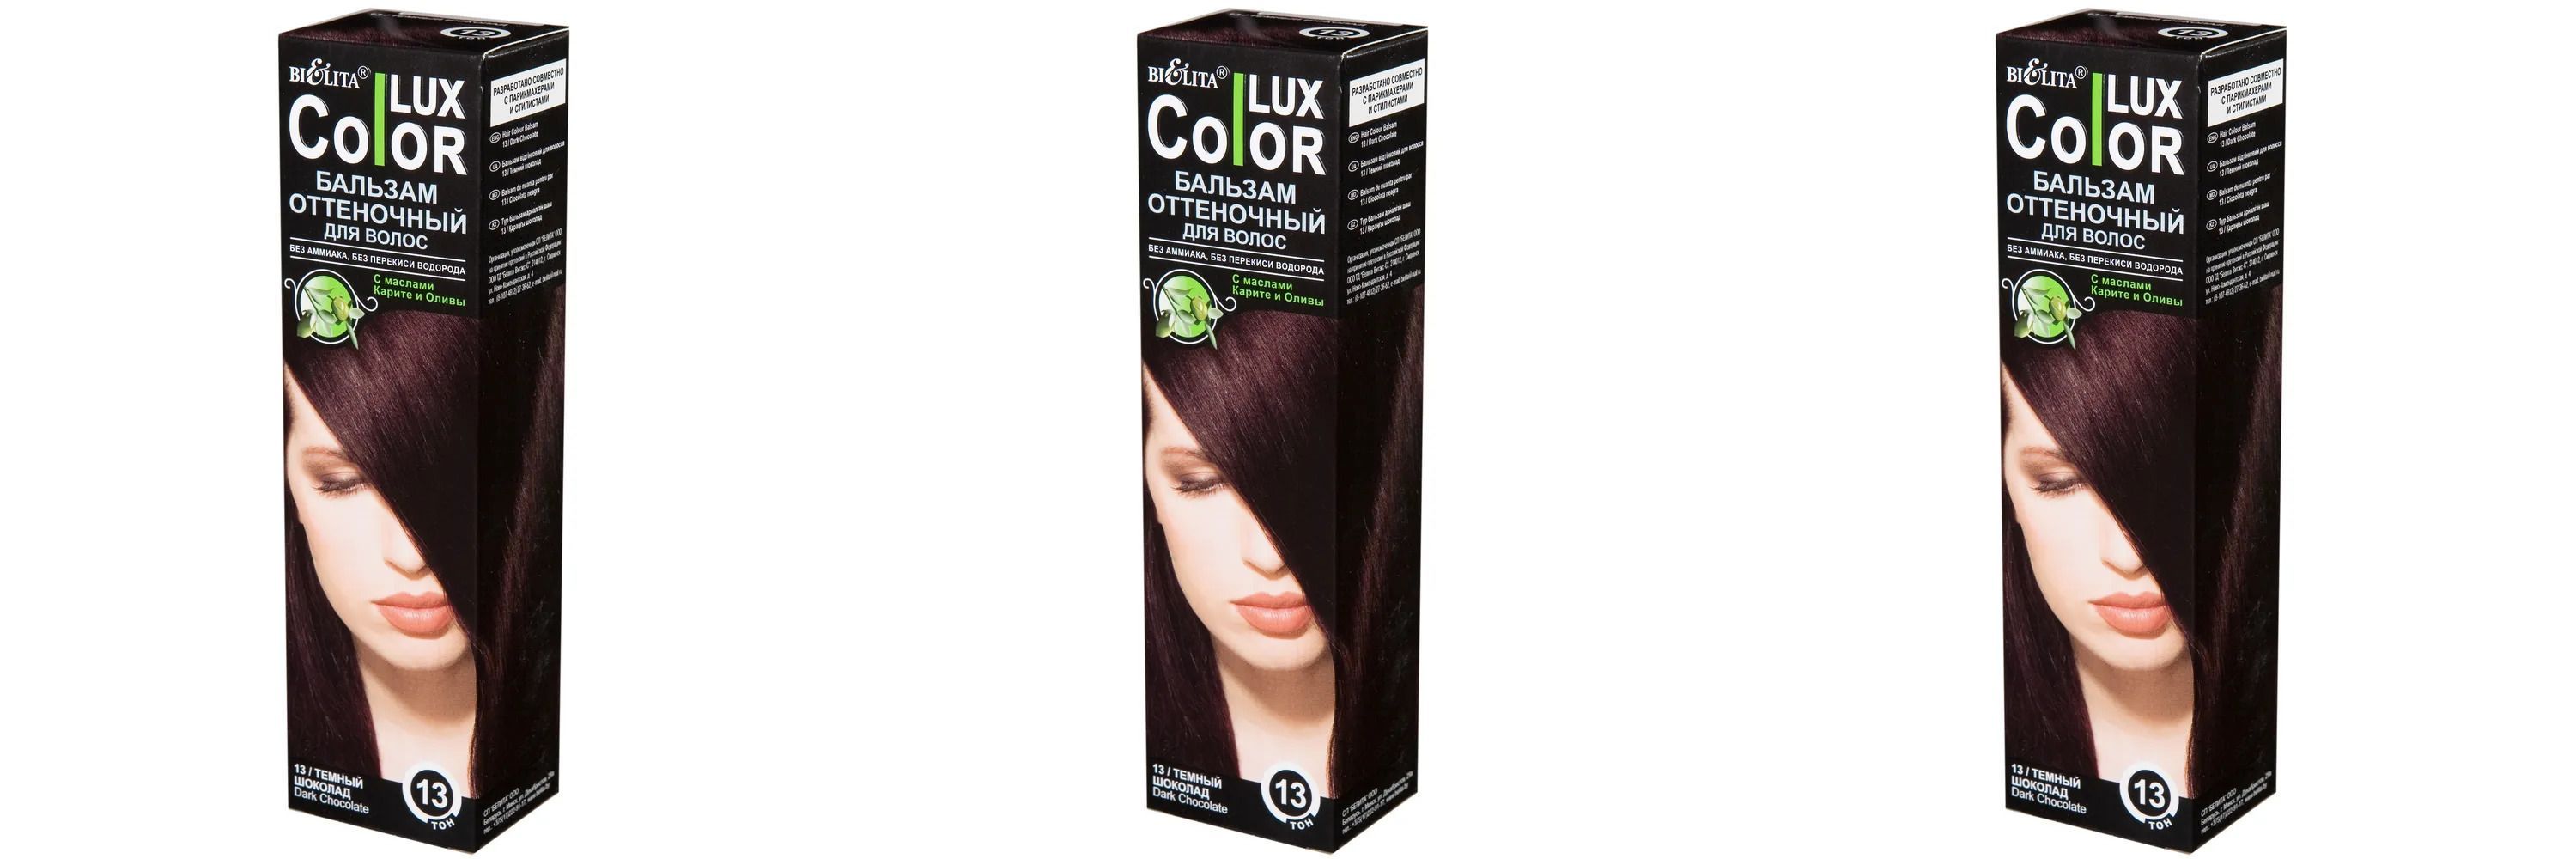 Белита Color lux Бальзам для волос оттеночный тон 13 темный шоколад 100 мл,3шт